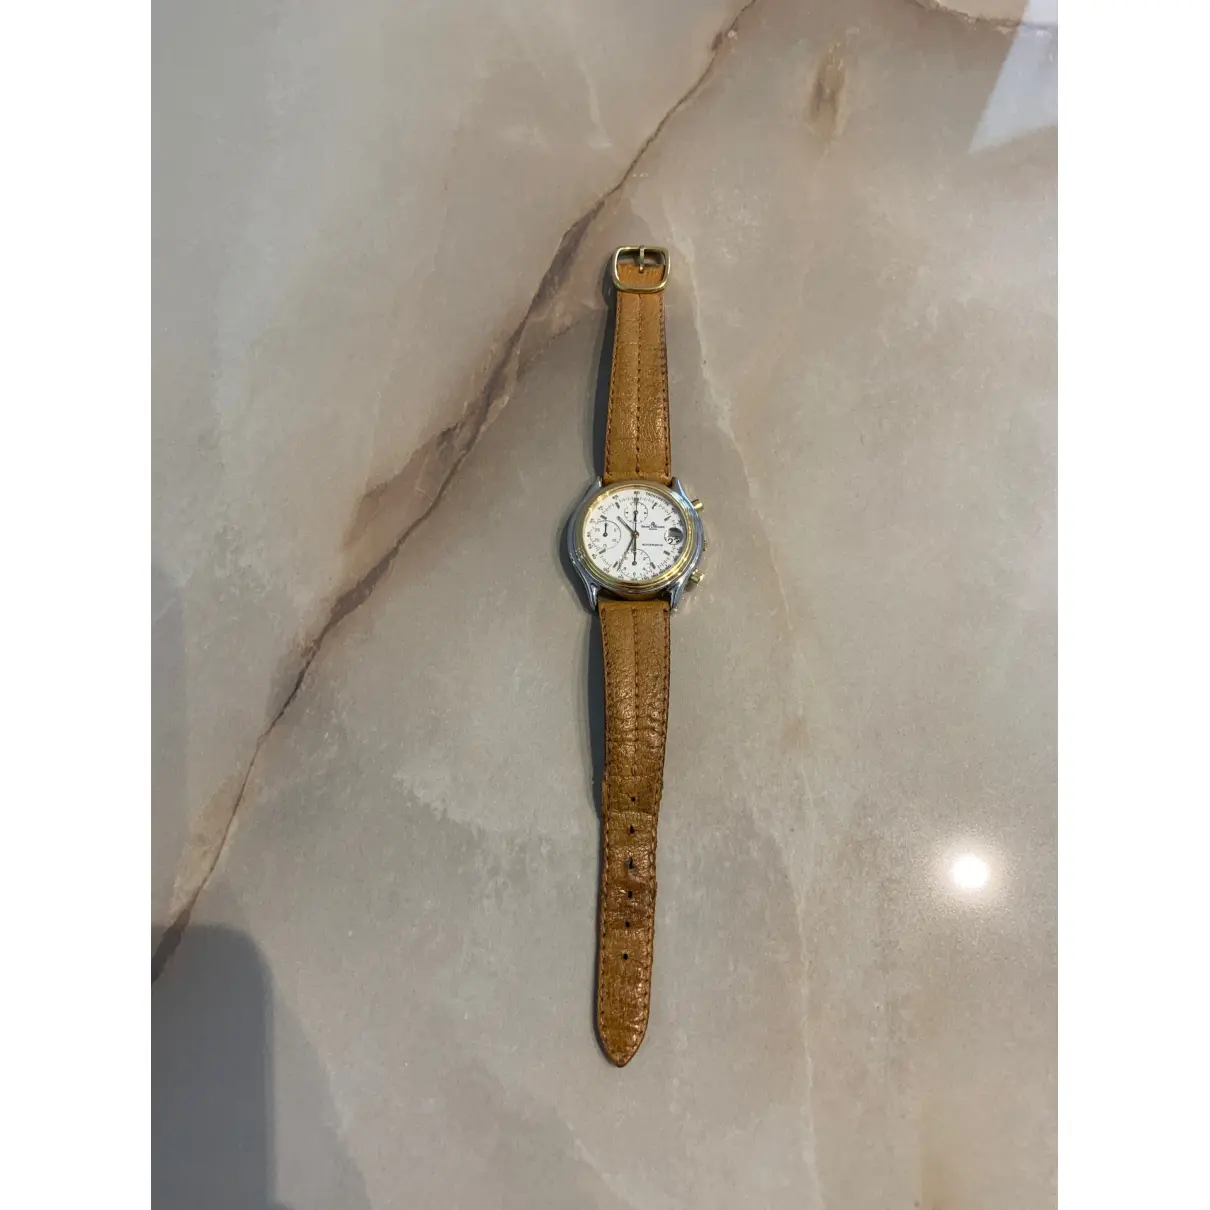 Buy Baume & Mercier Watch online - Vintage